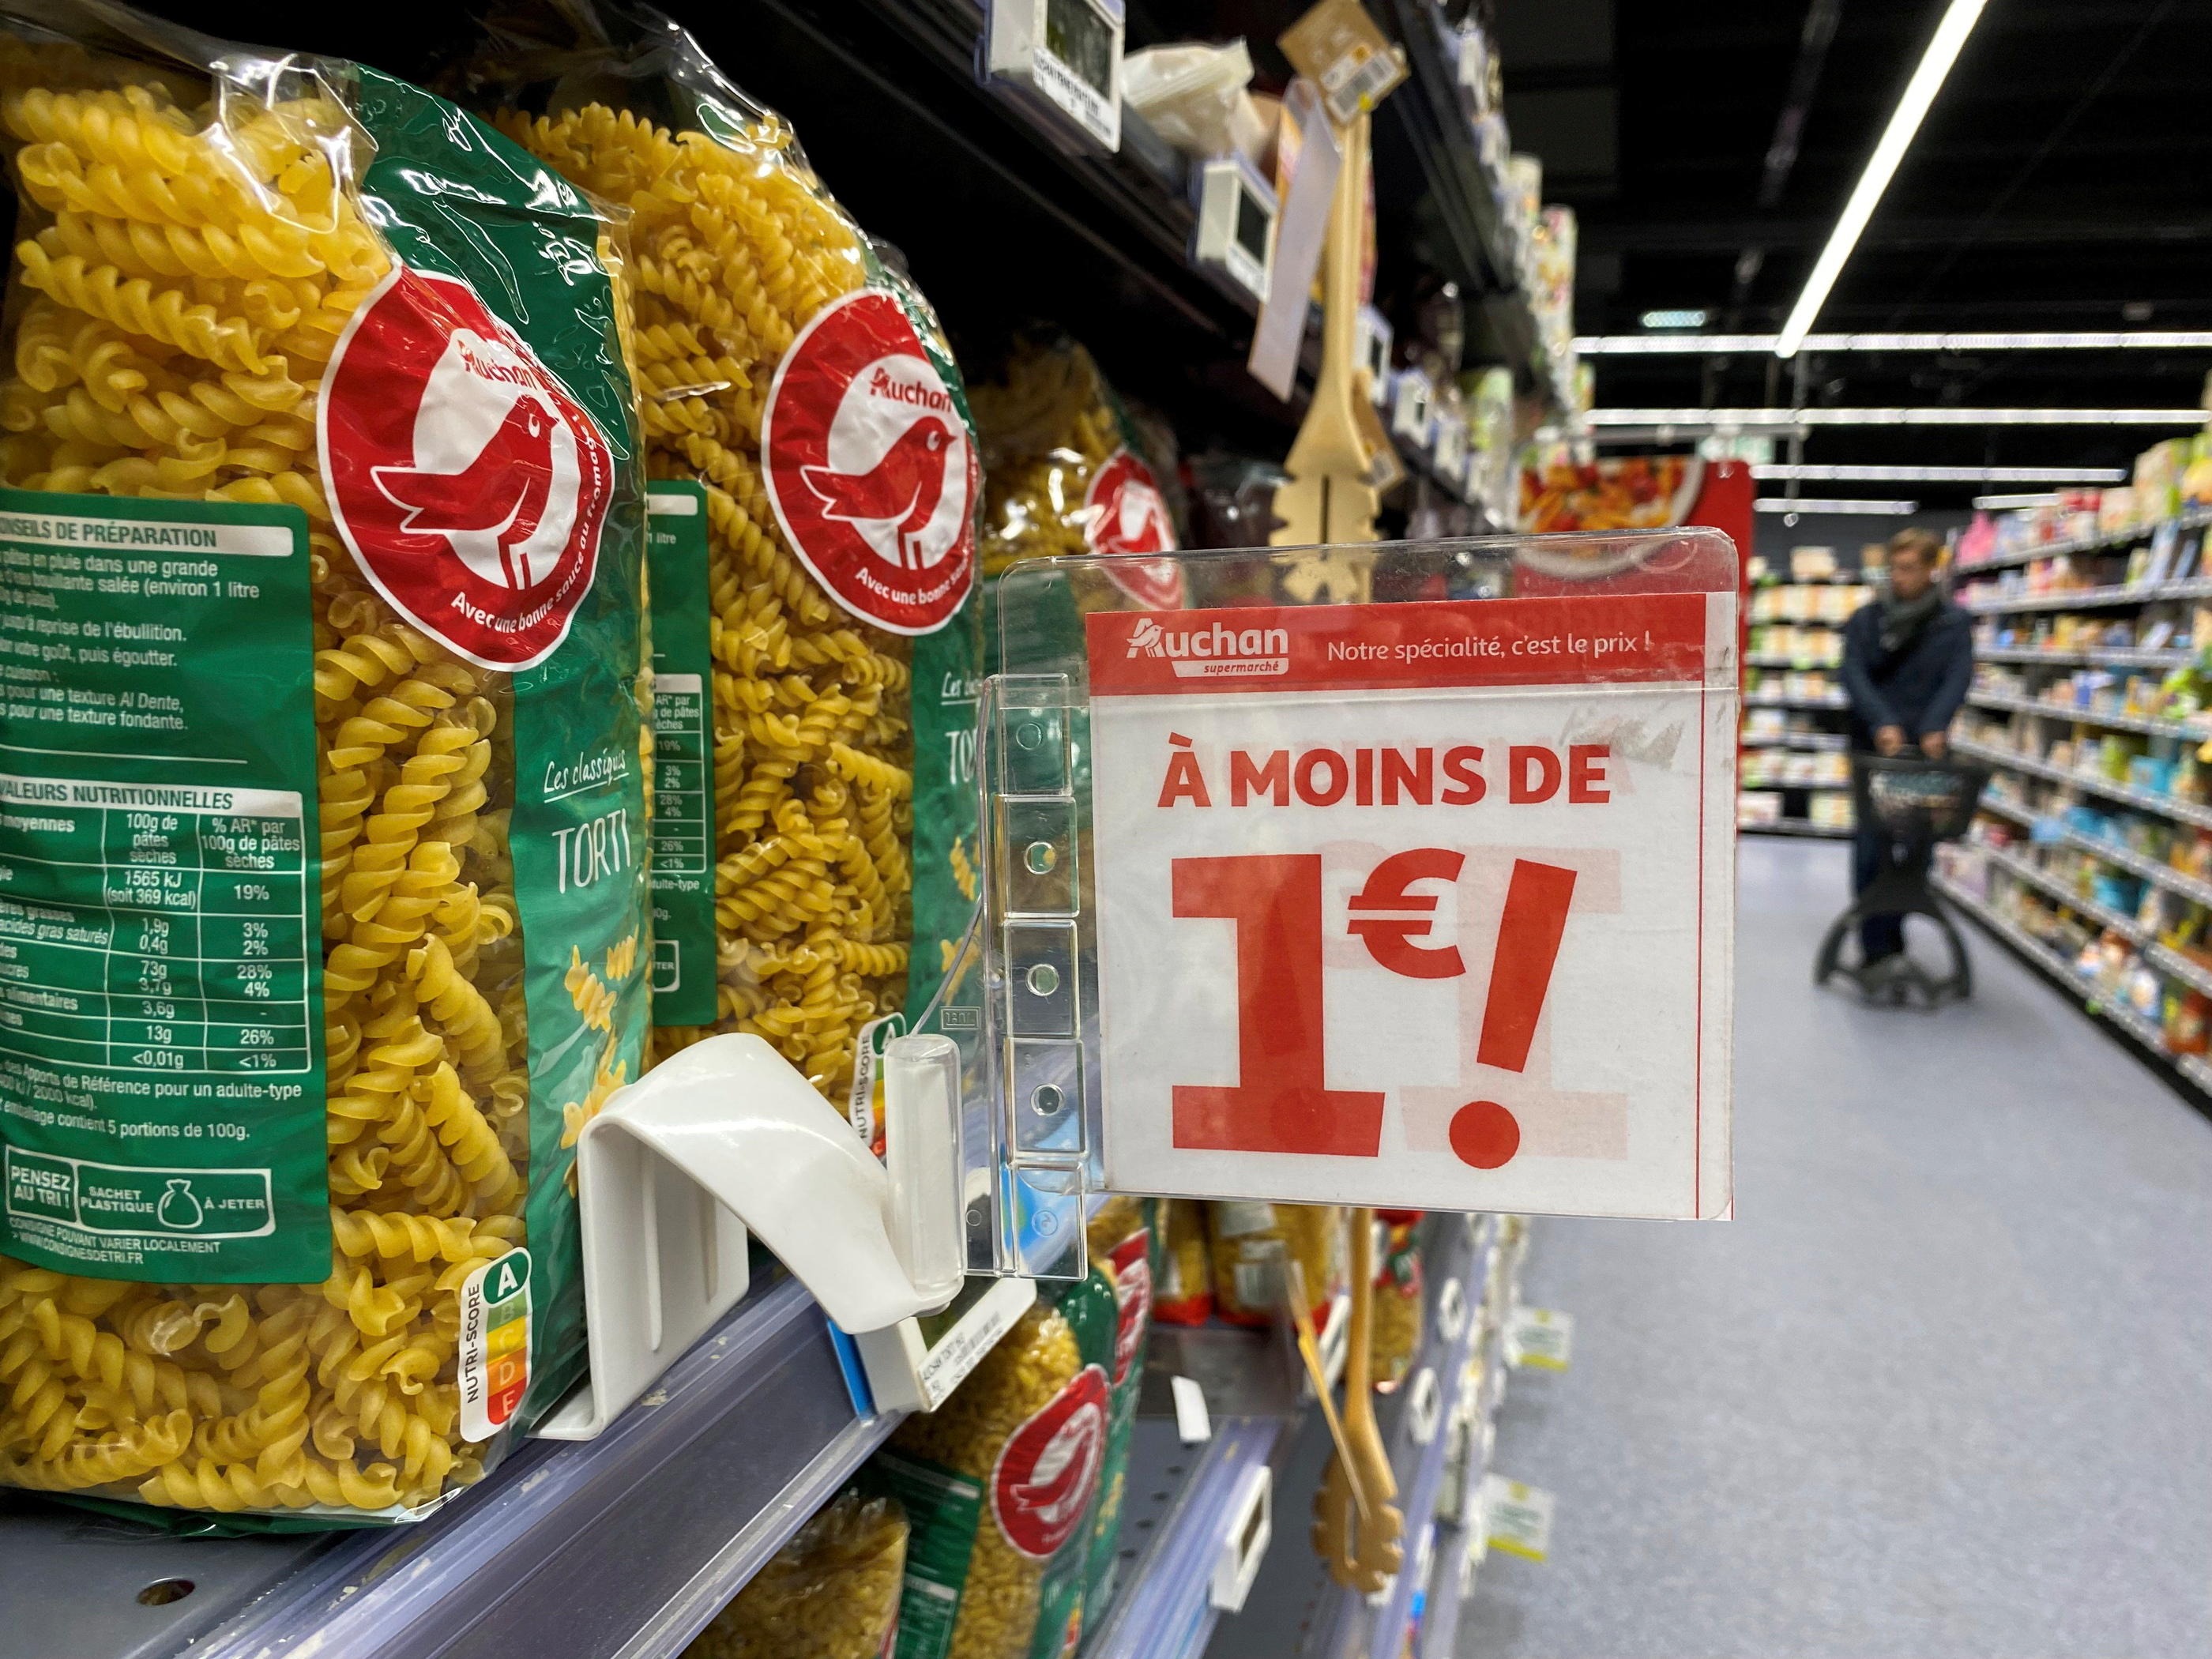 Les supermarchés ont pris l'habitude de remplir leur panier anti-inflation avec leurs propres marques, largement mises en avant dans les rayons. LP/Delphine Goldsztejn